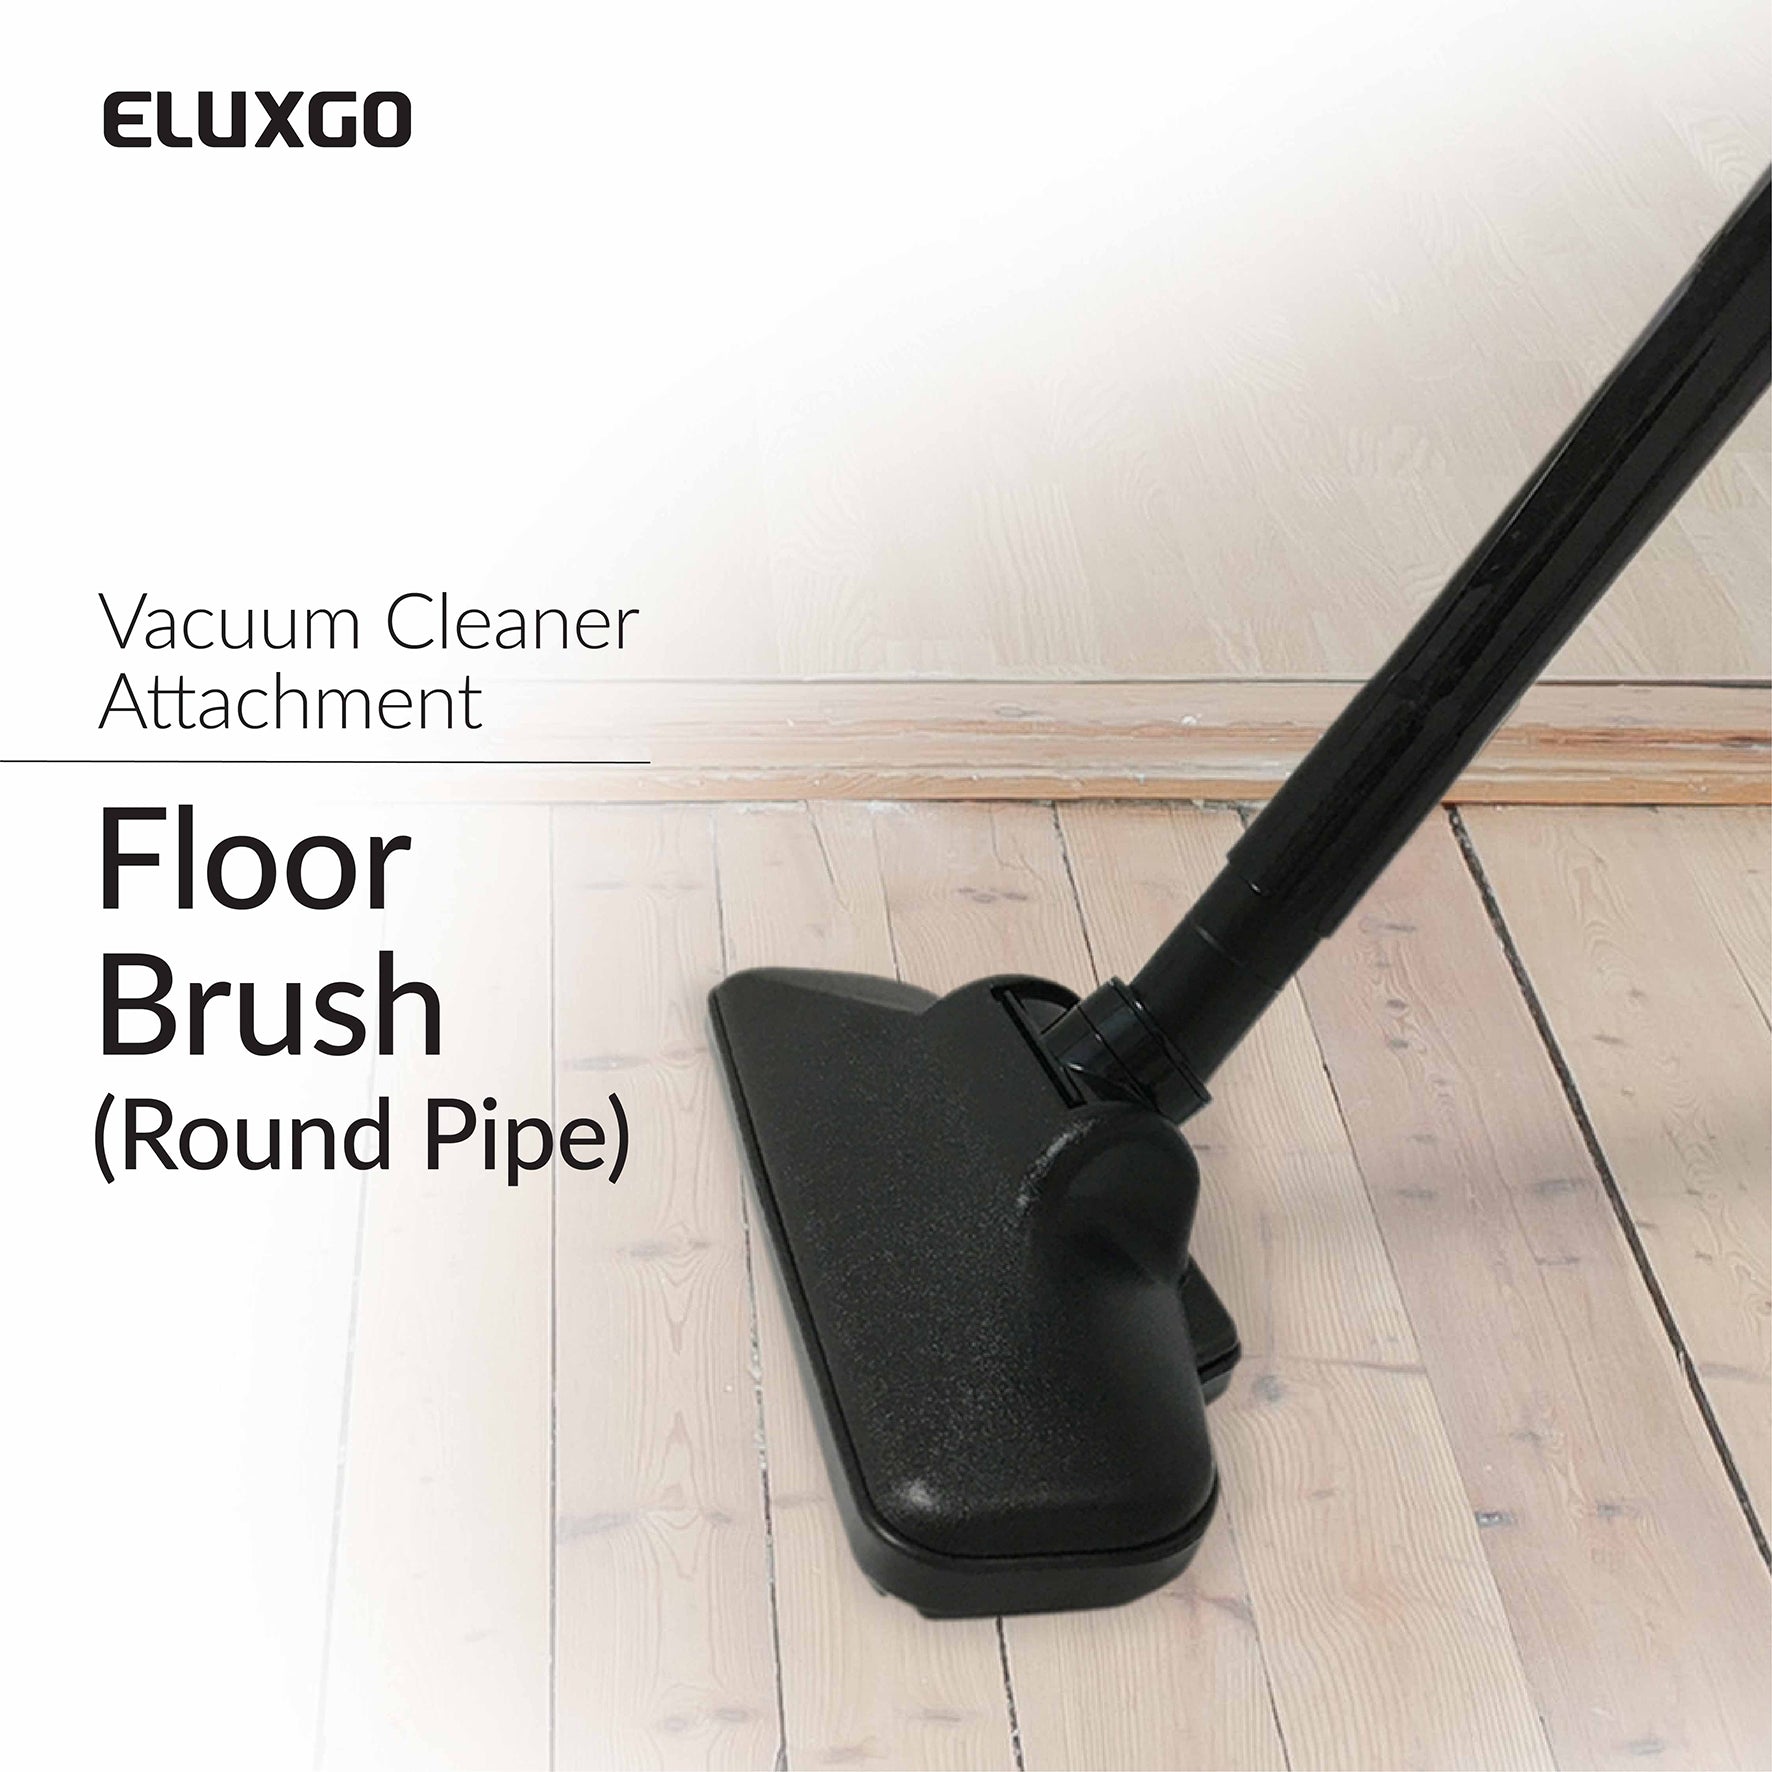 Eluxgo vacuum cleaner floor brush attachment